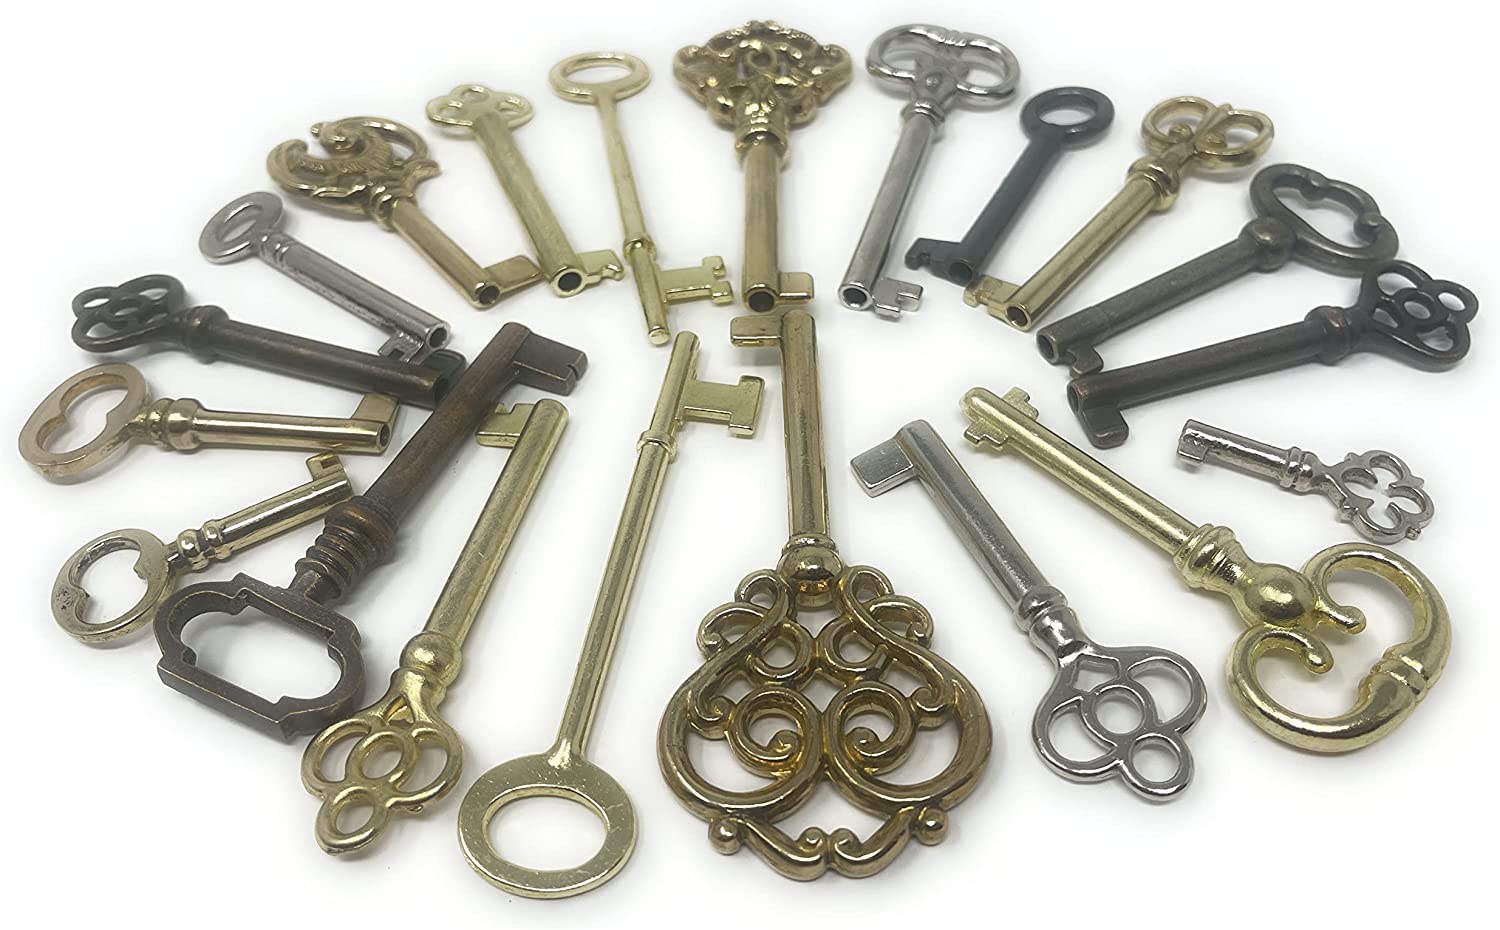 Vintage Skeleton Keys